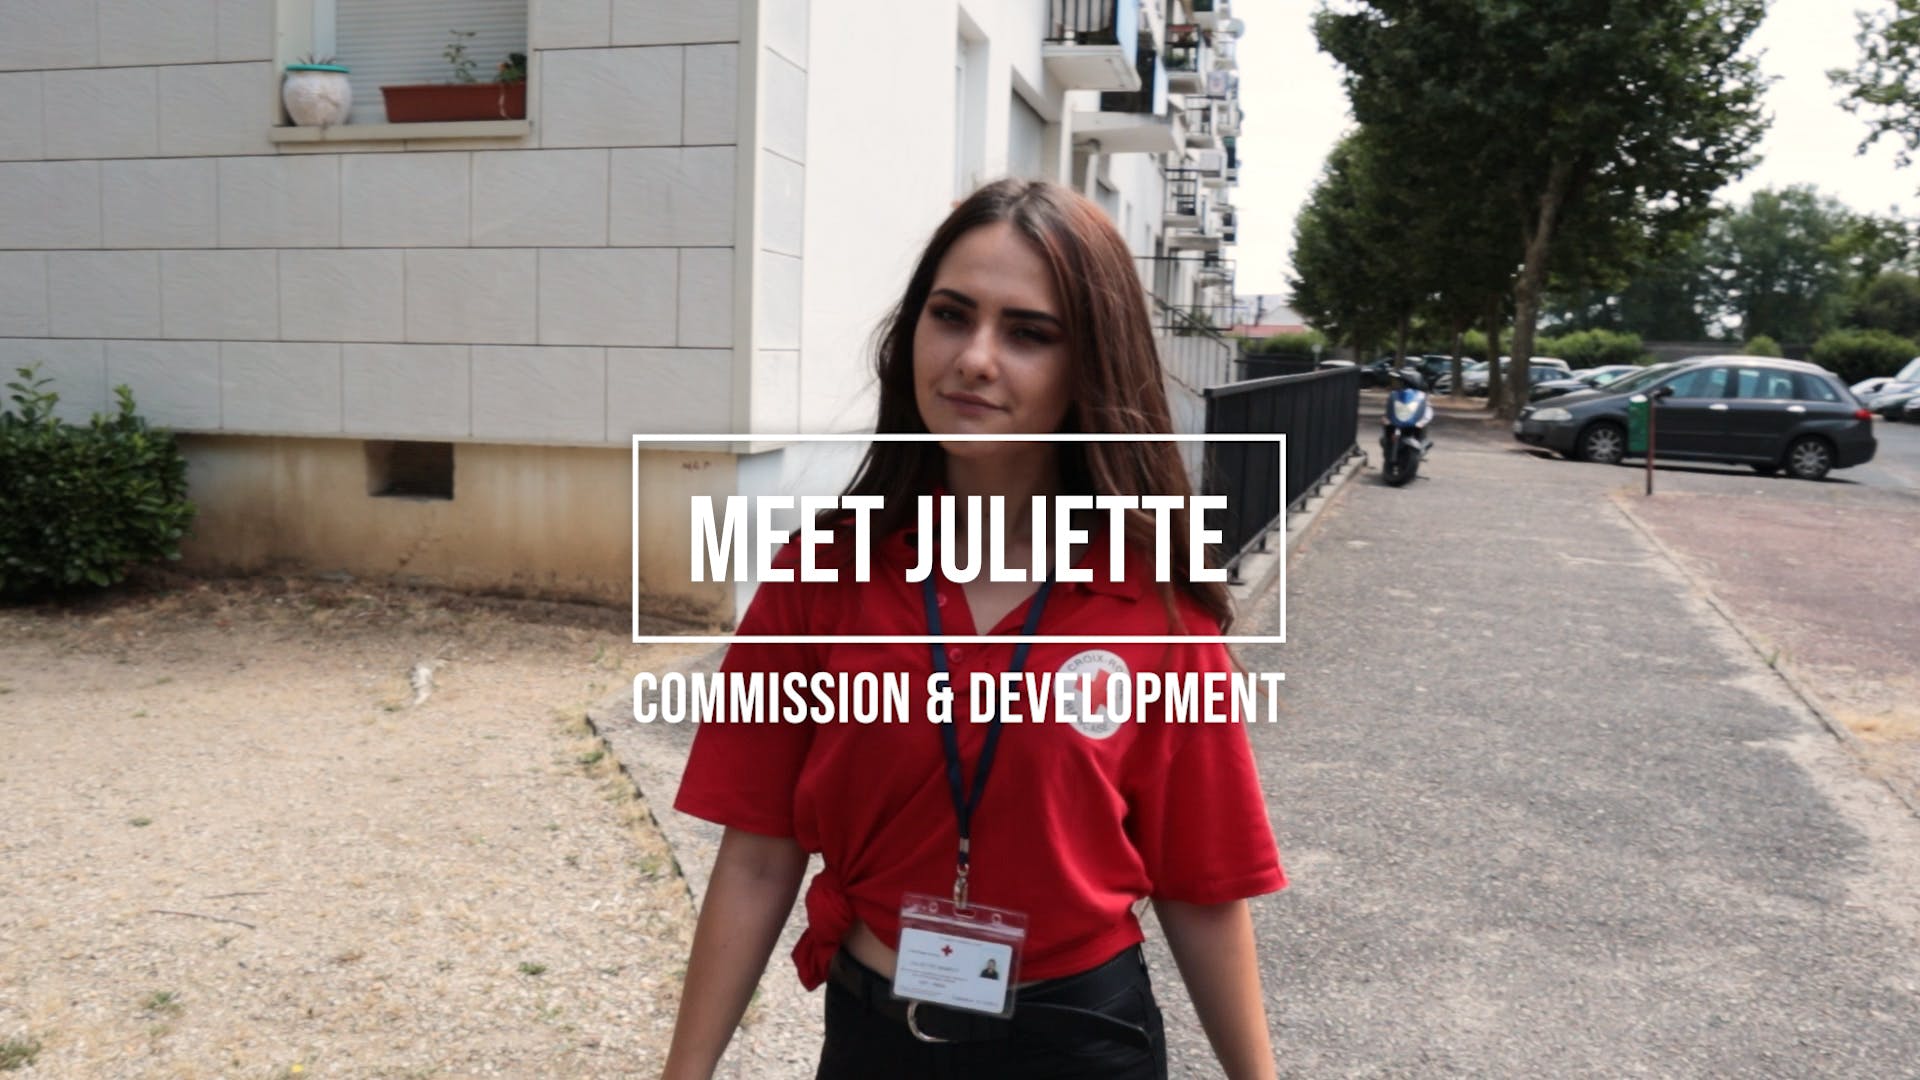 Voici Juliette : Commission et développement